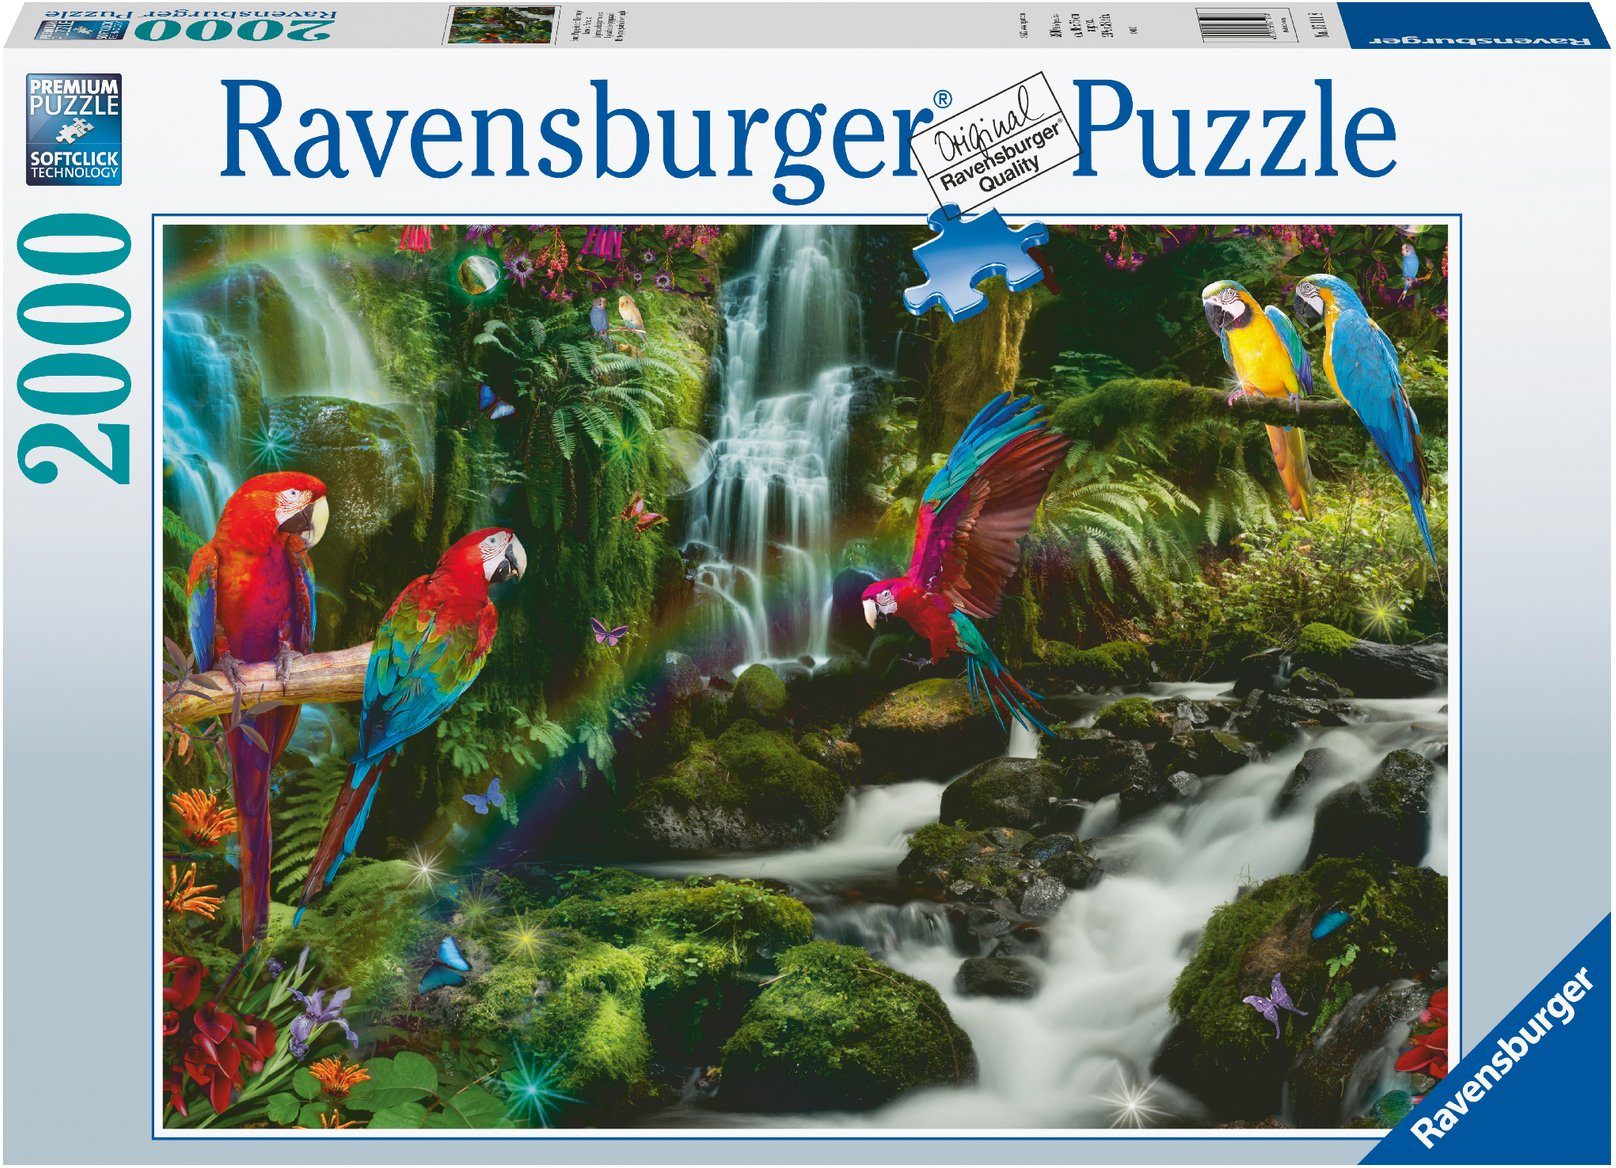 Ravensburger Puzzle Bunte Papageien im Dschungel, 2000 Puzzleteile, Made in Germany, FSC® - schützt Wald - weltweit